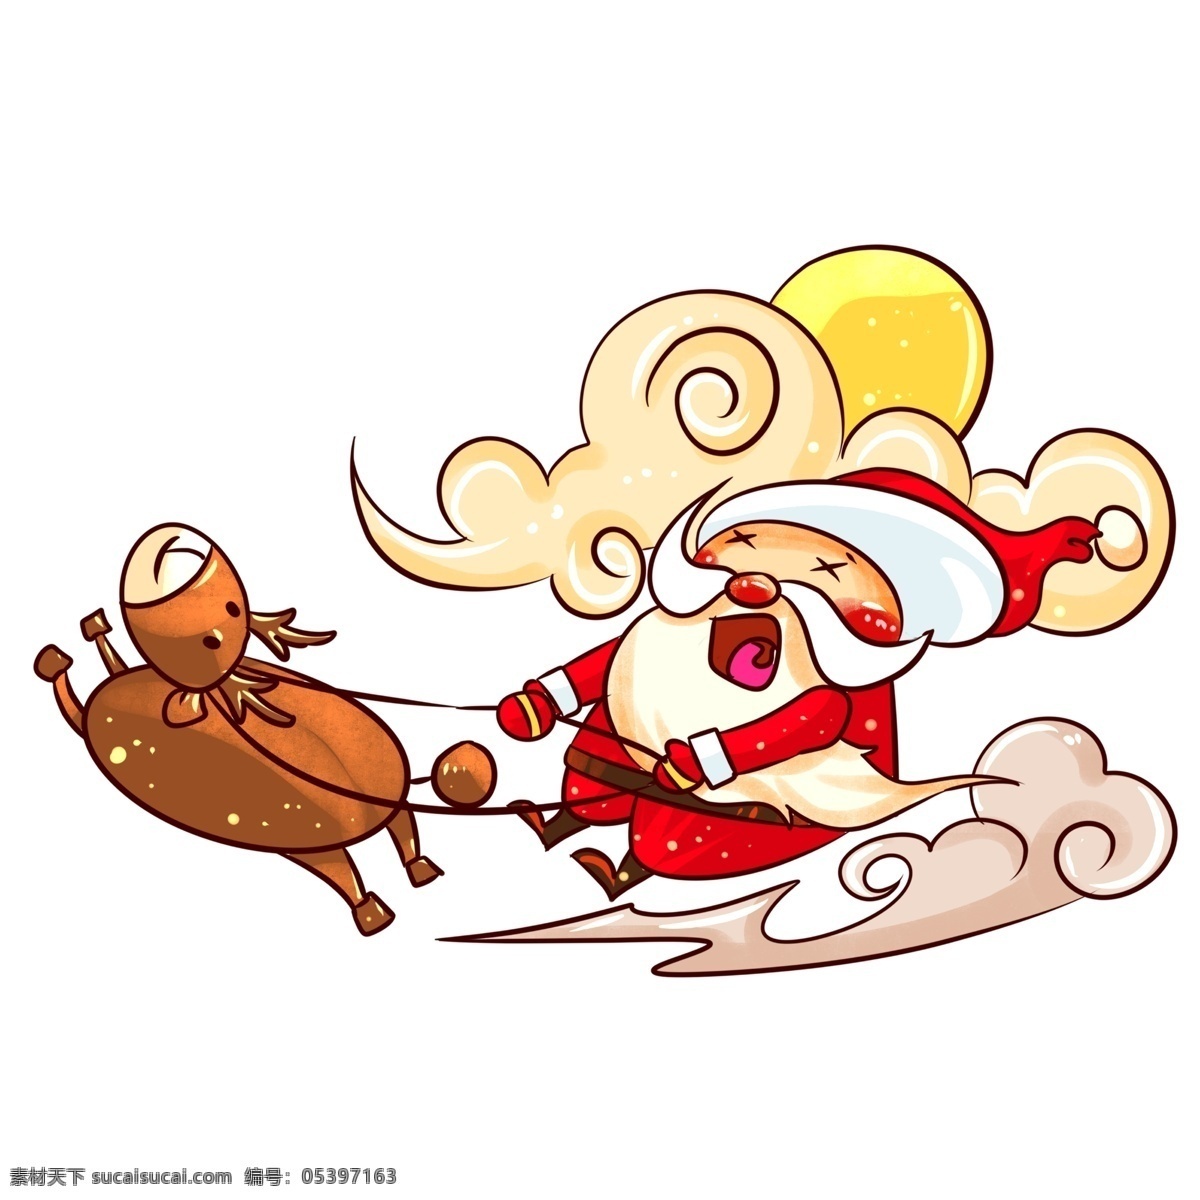 圣诞节 圣诞老人 麋鹿 飞奔 手绘 插画 手绘送礼物 礼物 圣诞节雪人 雪人 收礼 物 小朋友